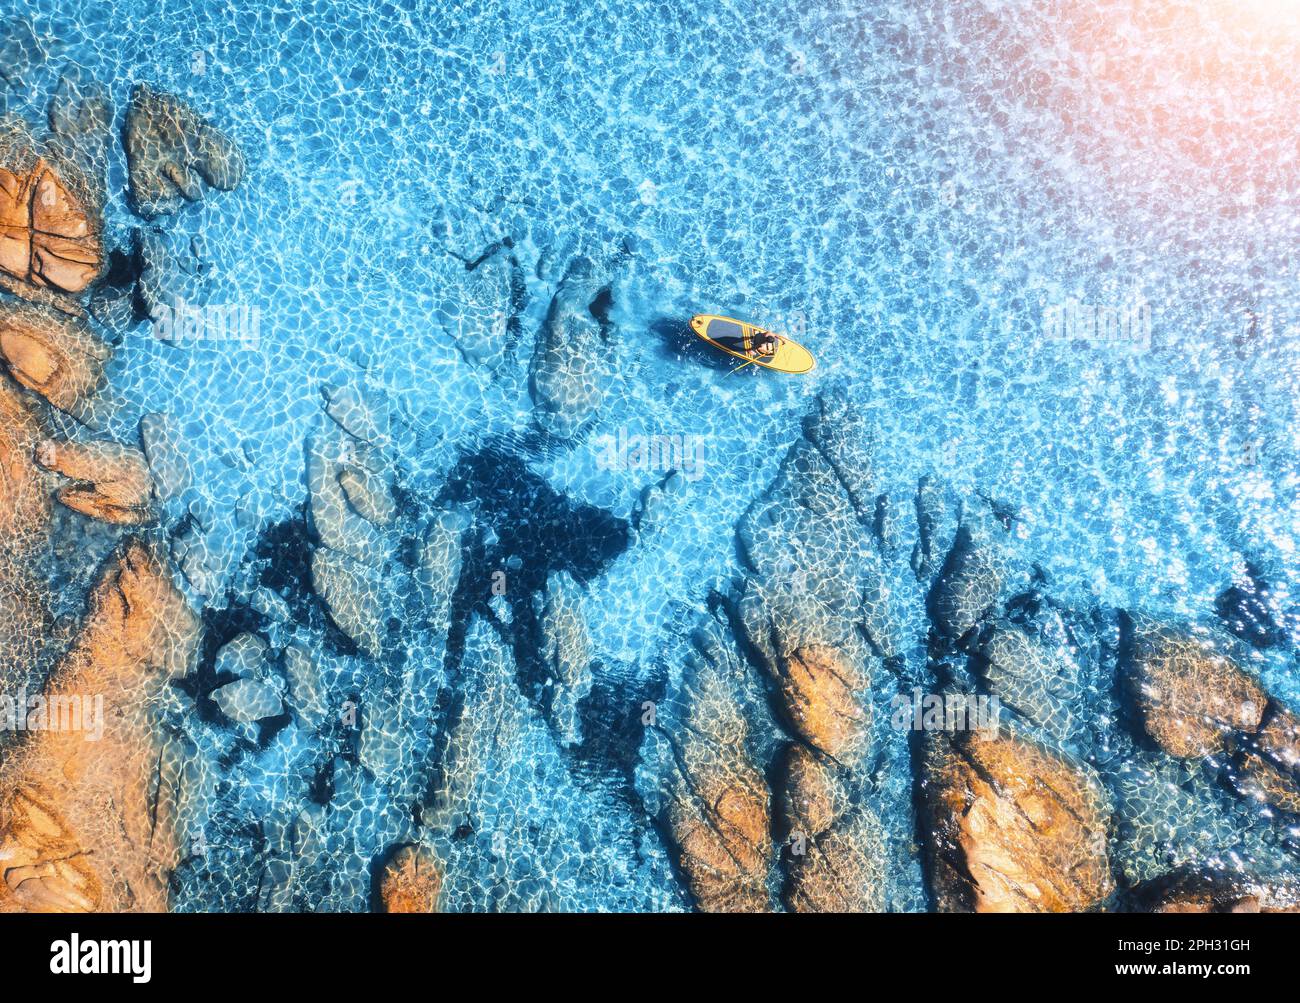 Luftaufnahme des Mannes auf dem schwimmenden Sup Board auf blauem Meer, felsiger Strand Stockfoto